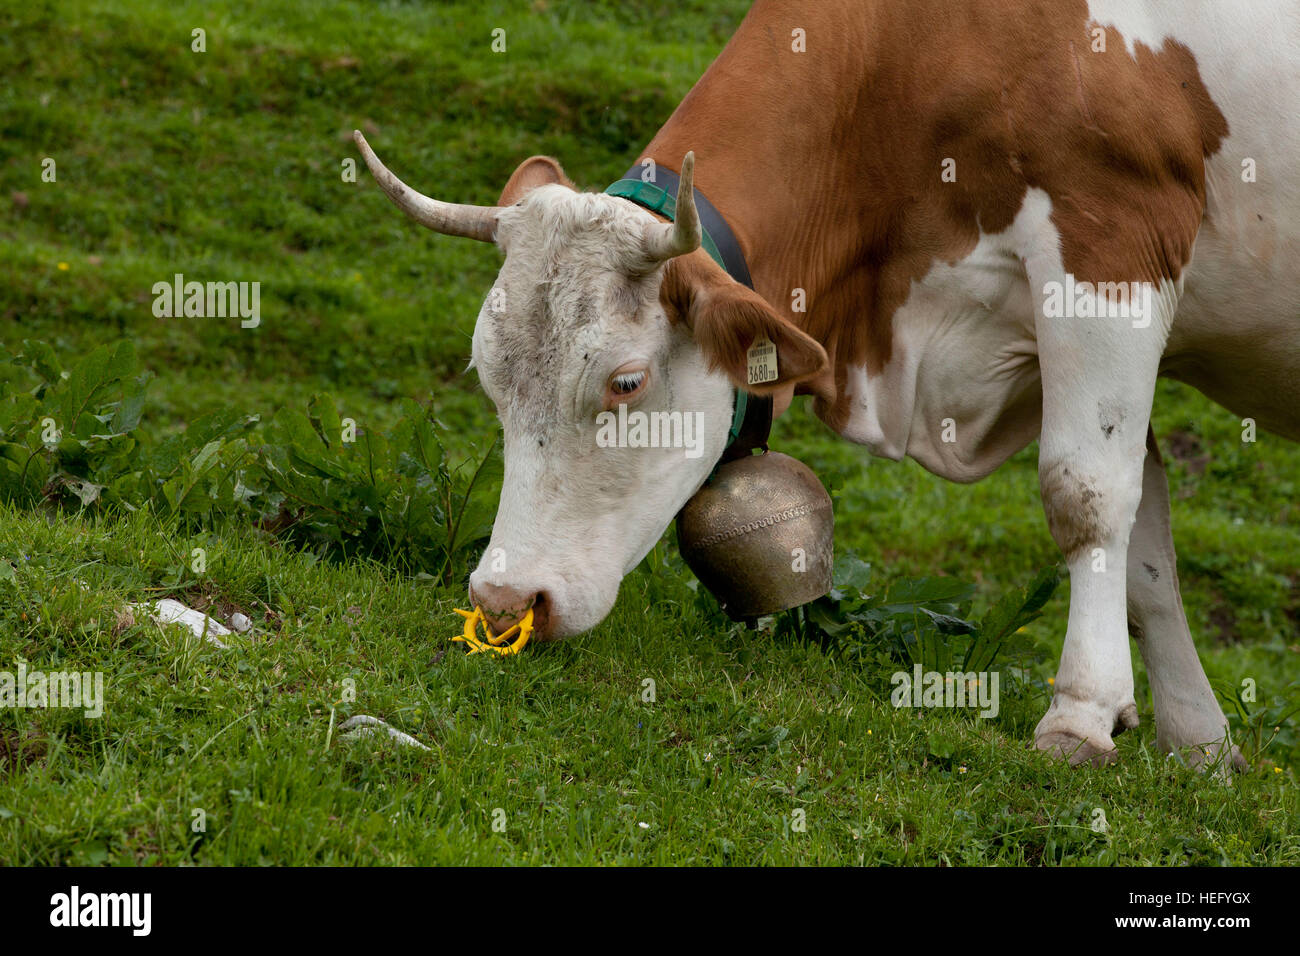 Vache avec cloche de vache et bouchon d'aspiration Banque D'Images